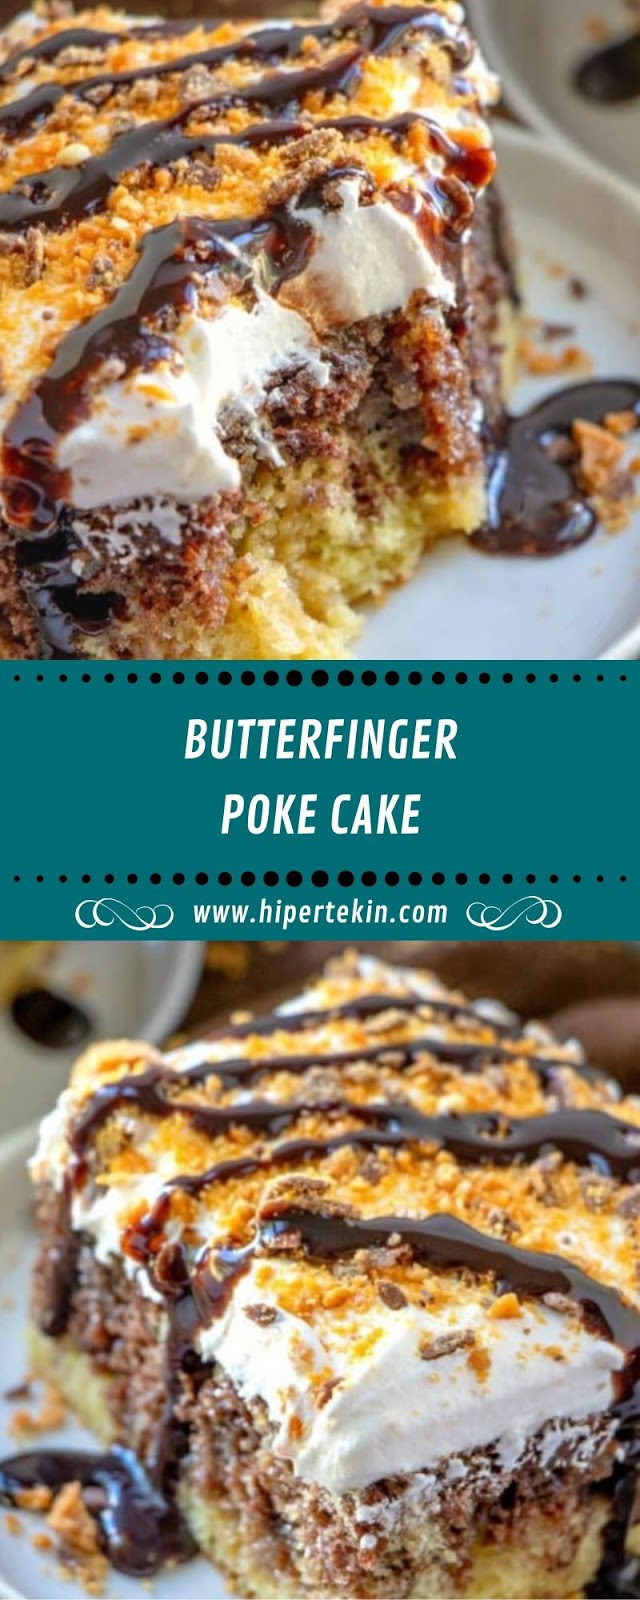 BUTTERFINGER POKE CAKE